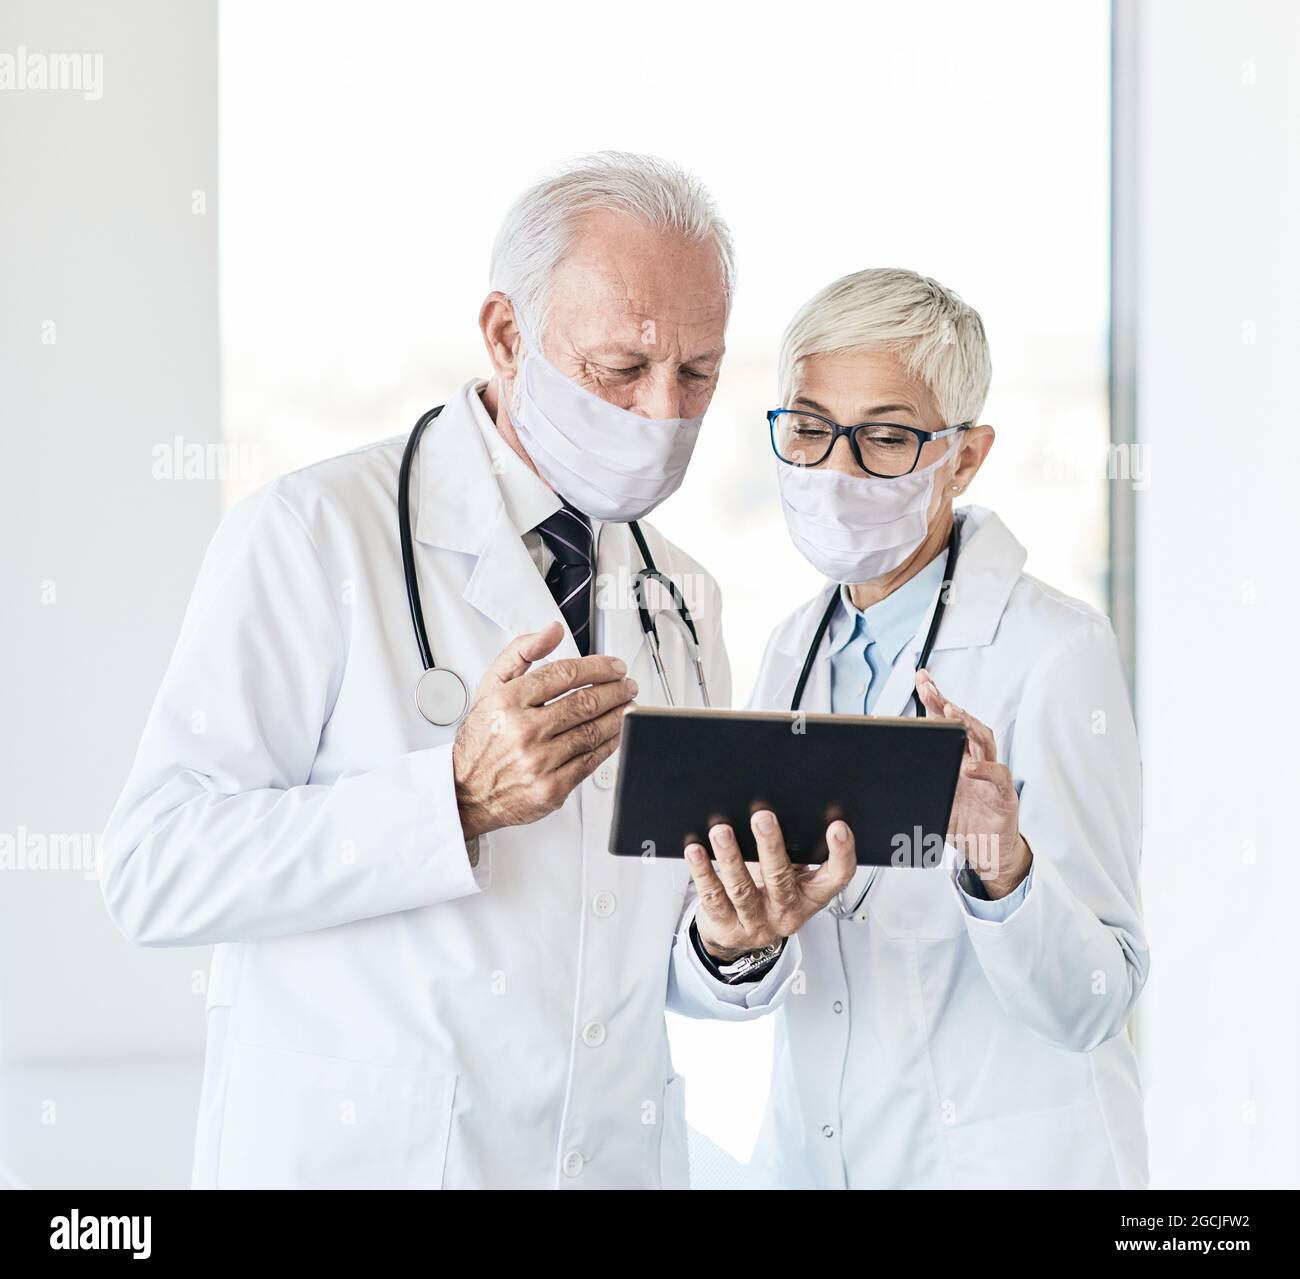 dottore senior conversazione ospedale sanità medicina tablet maschera virus protezione epidemia donna uomo Foto Stock